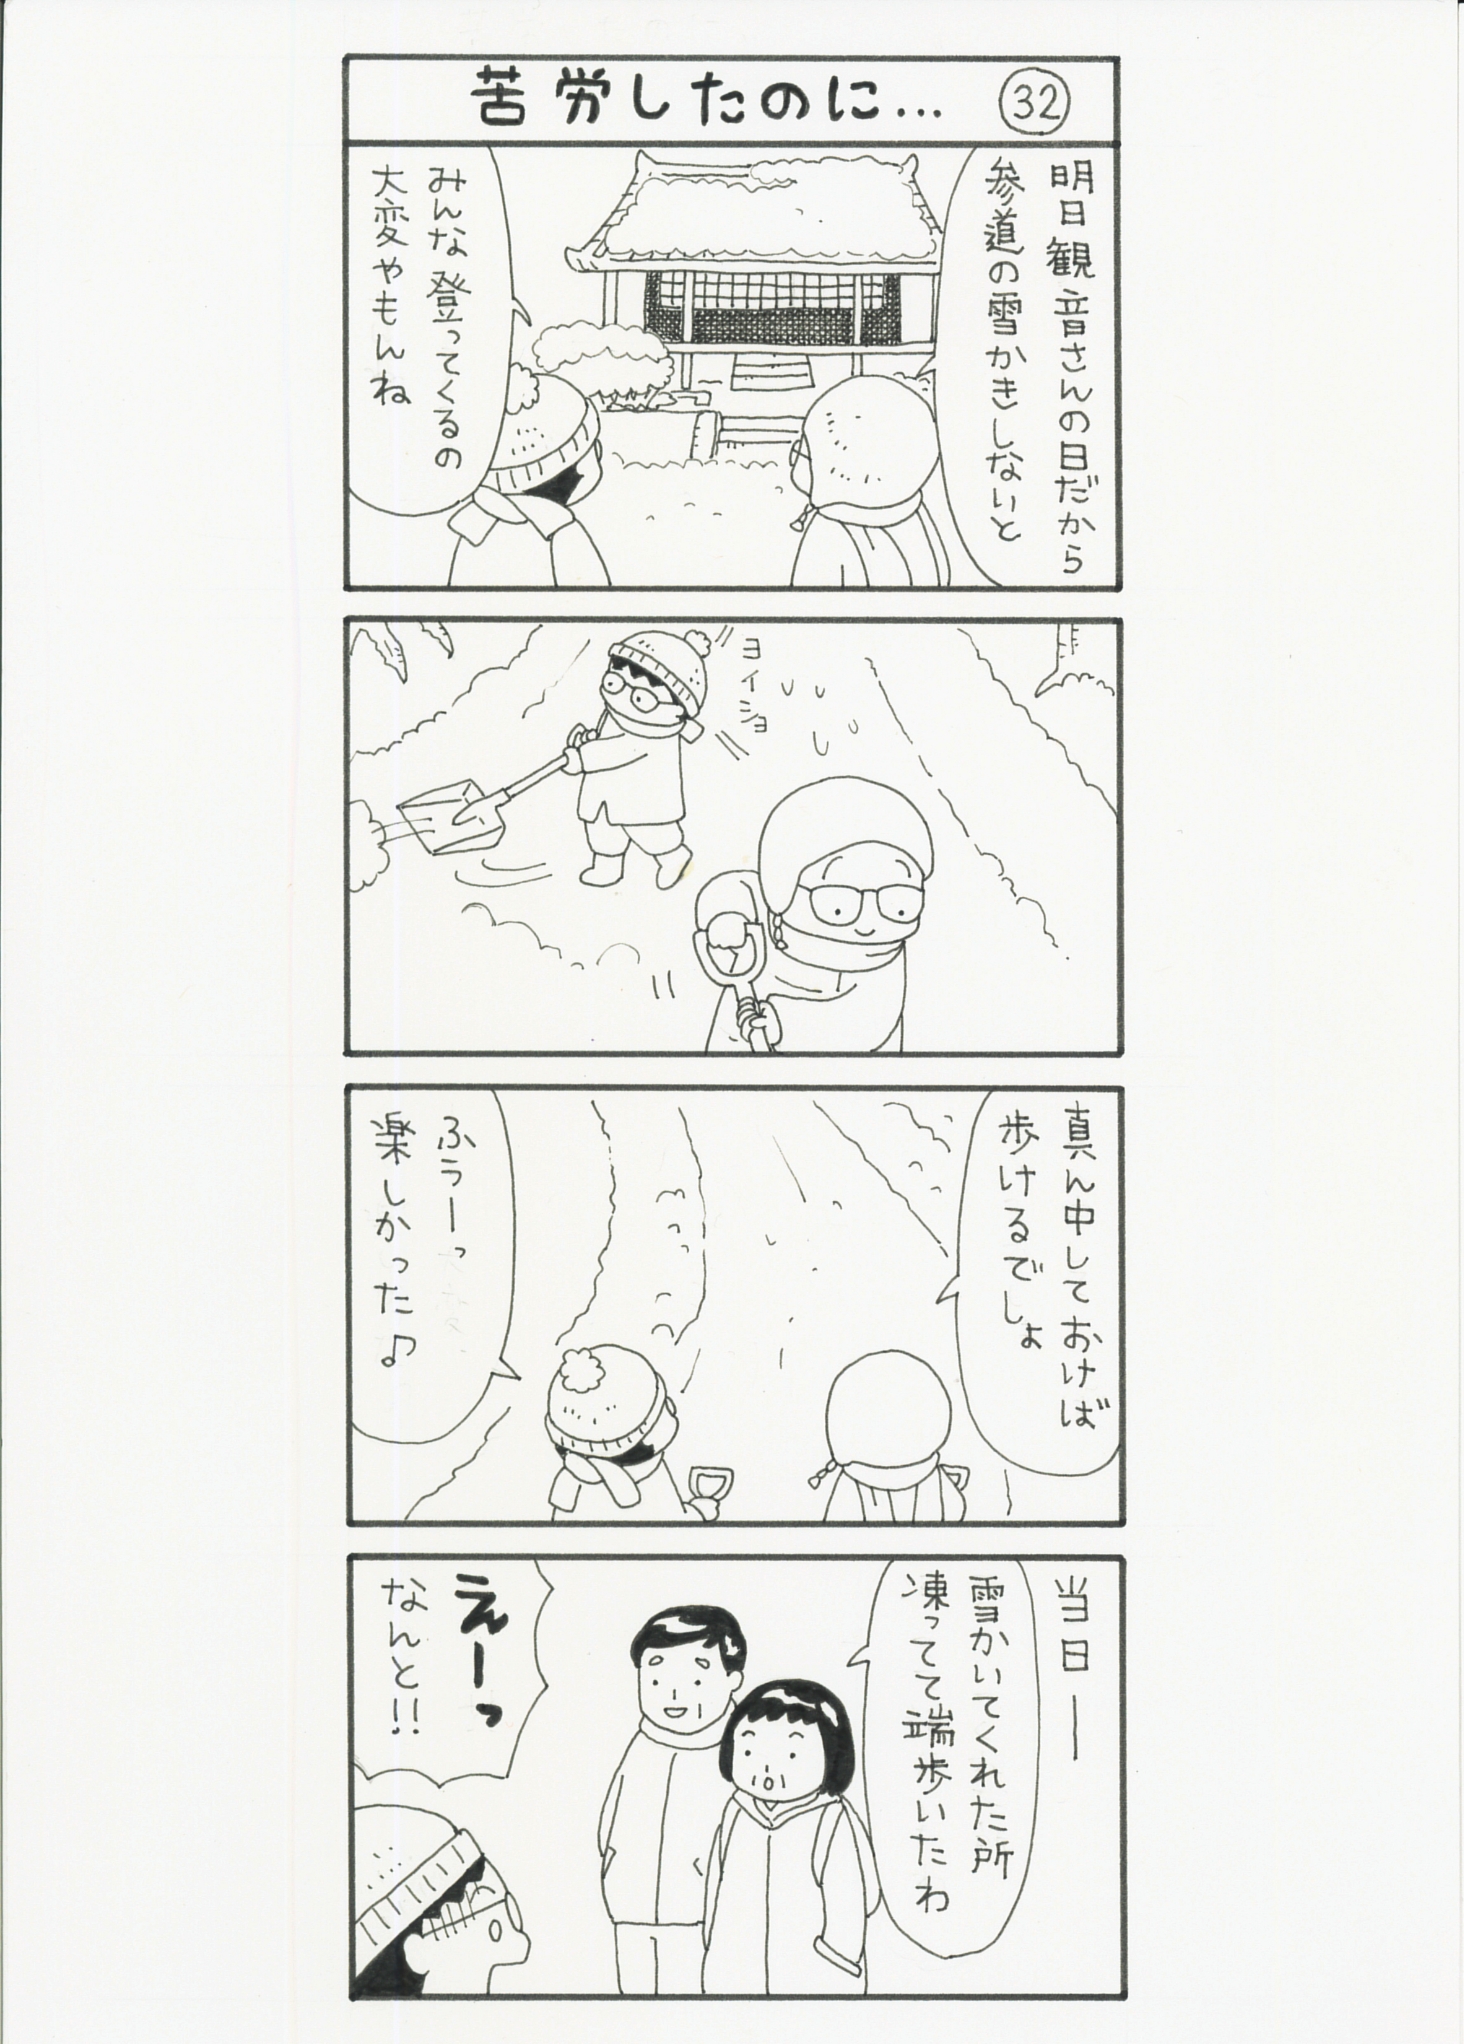 まっちゃん４コマ漫画32話